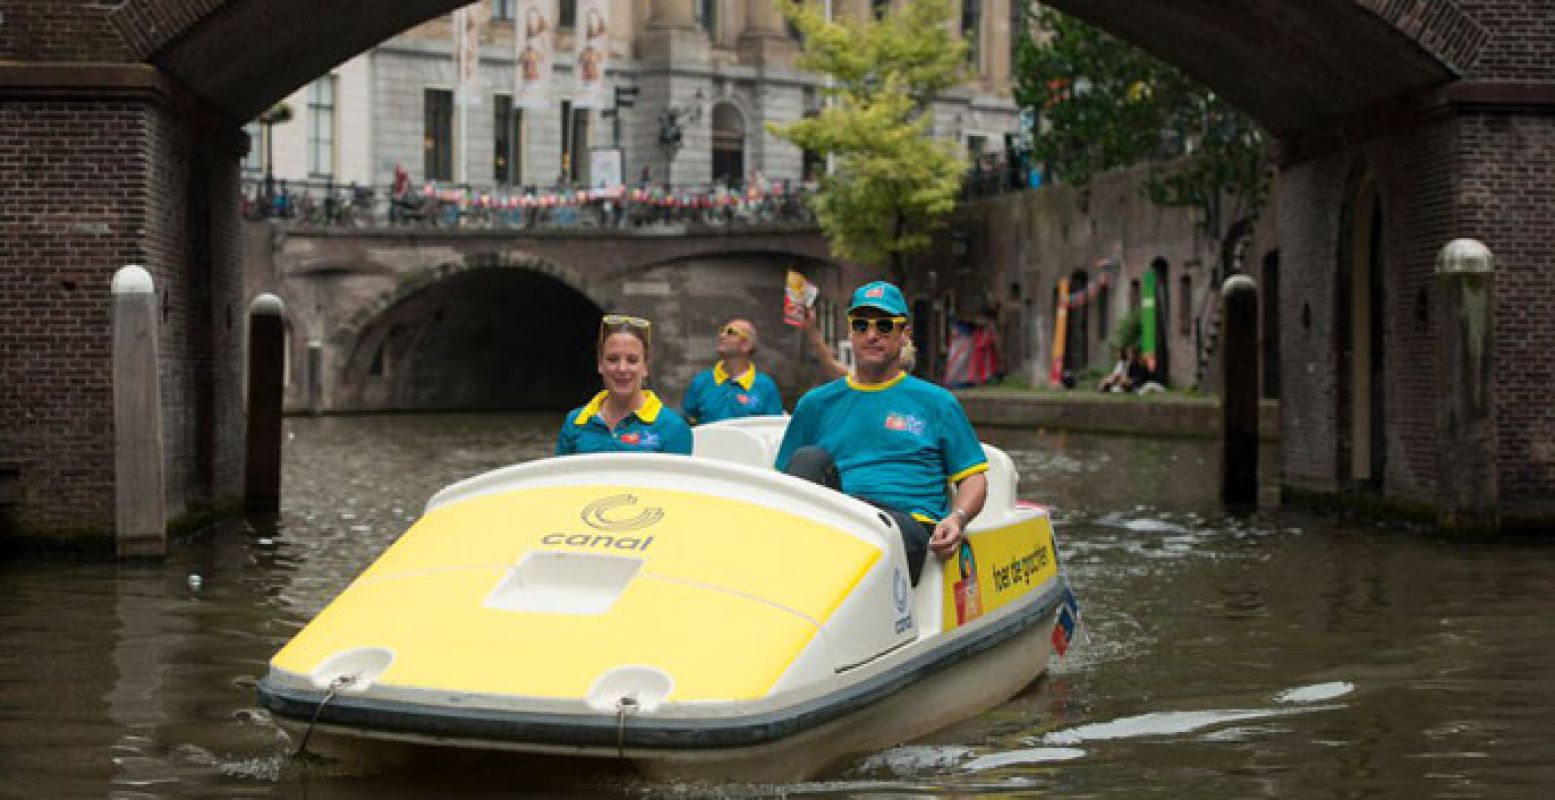 Lekker ronddobberen op een waterfiets? In Utrecht is voor iedereen wat te beleven! Foto: Tour de France Utrecht.